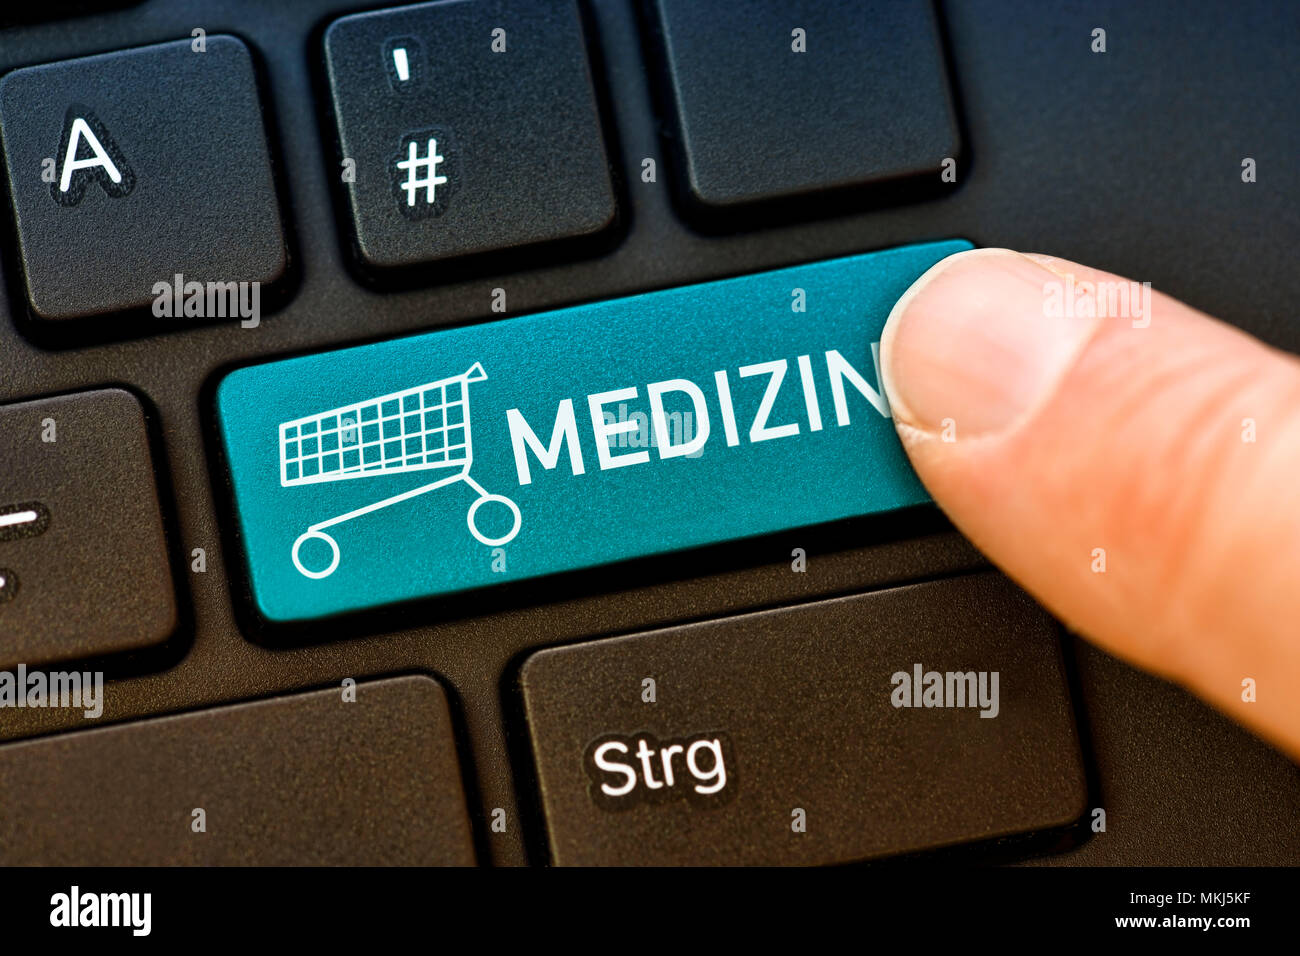 Bouton de l'ordinateur de la médecine, les achats en ligne de médicaments, Computertaste Aufschrift mit der Medizin, von Medikamenten Onlineshopping Banque D'Images